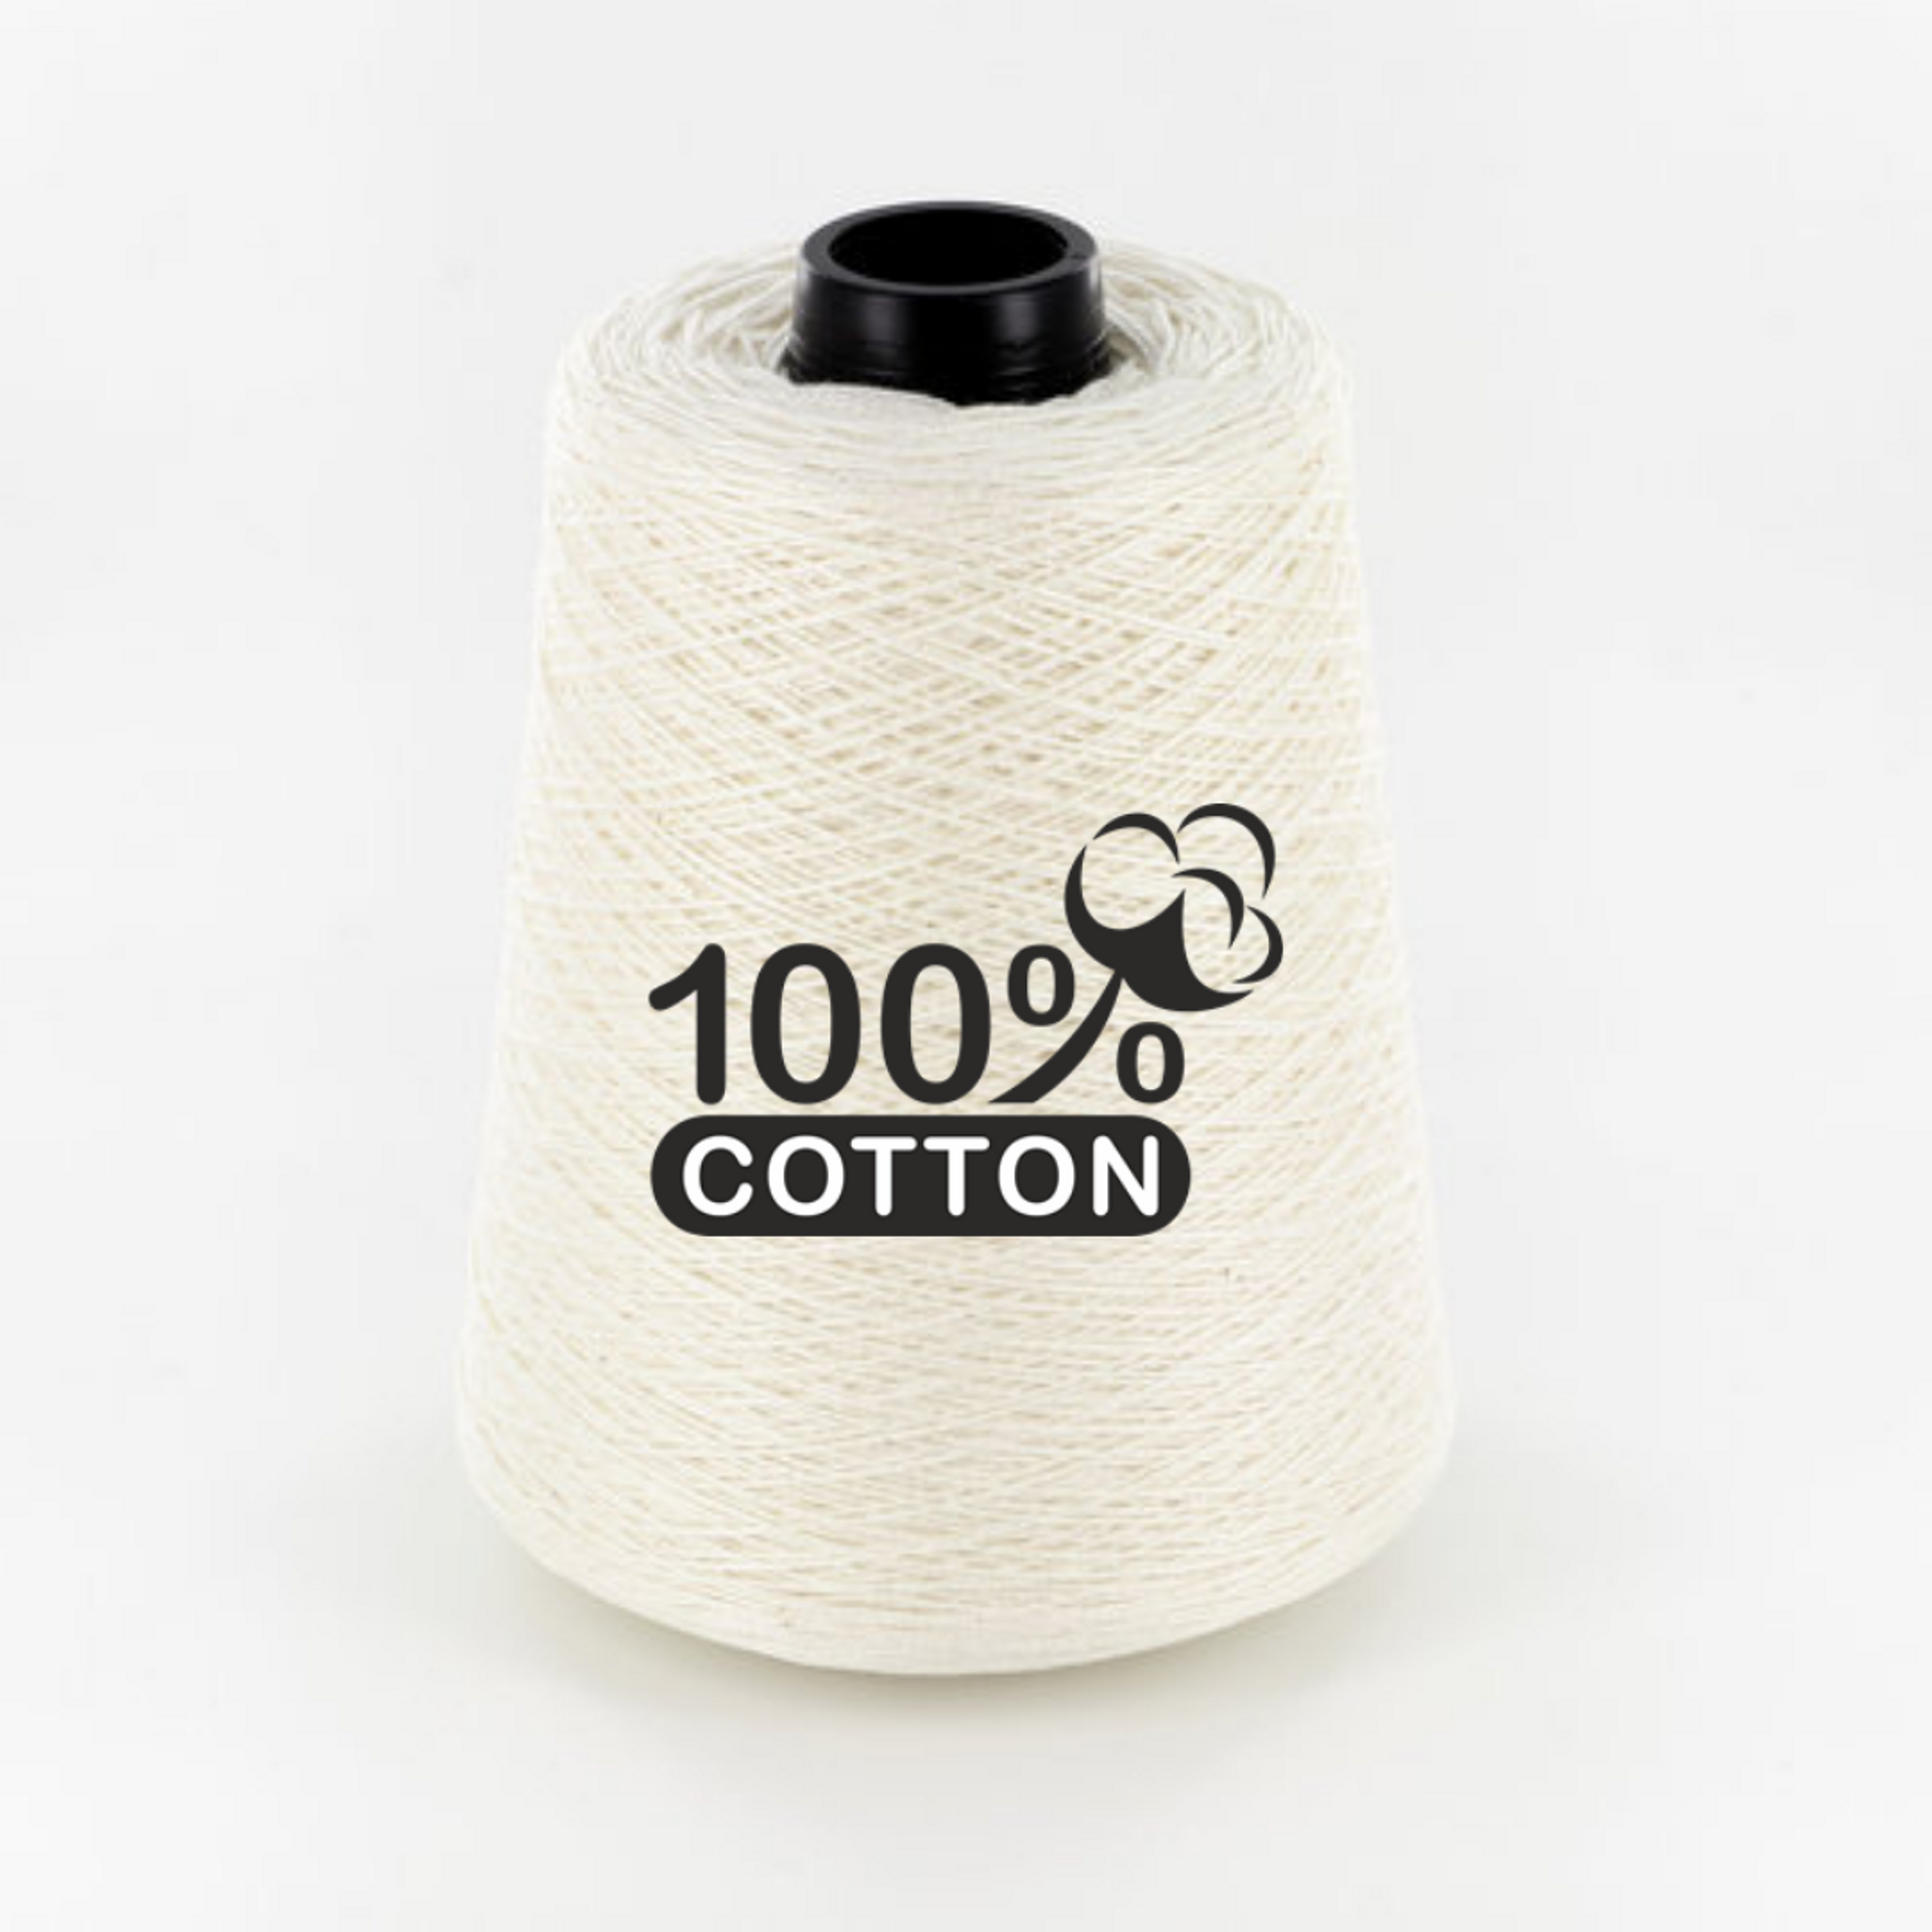 Neutral Tan Striped Cotton Pillow | TAN